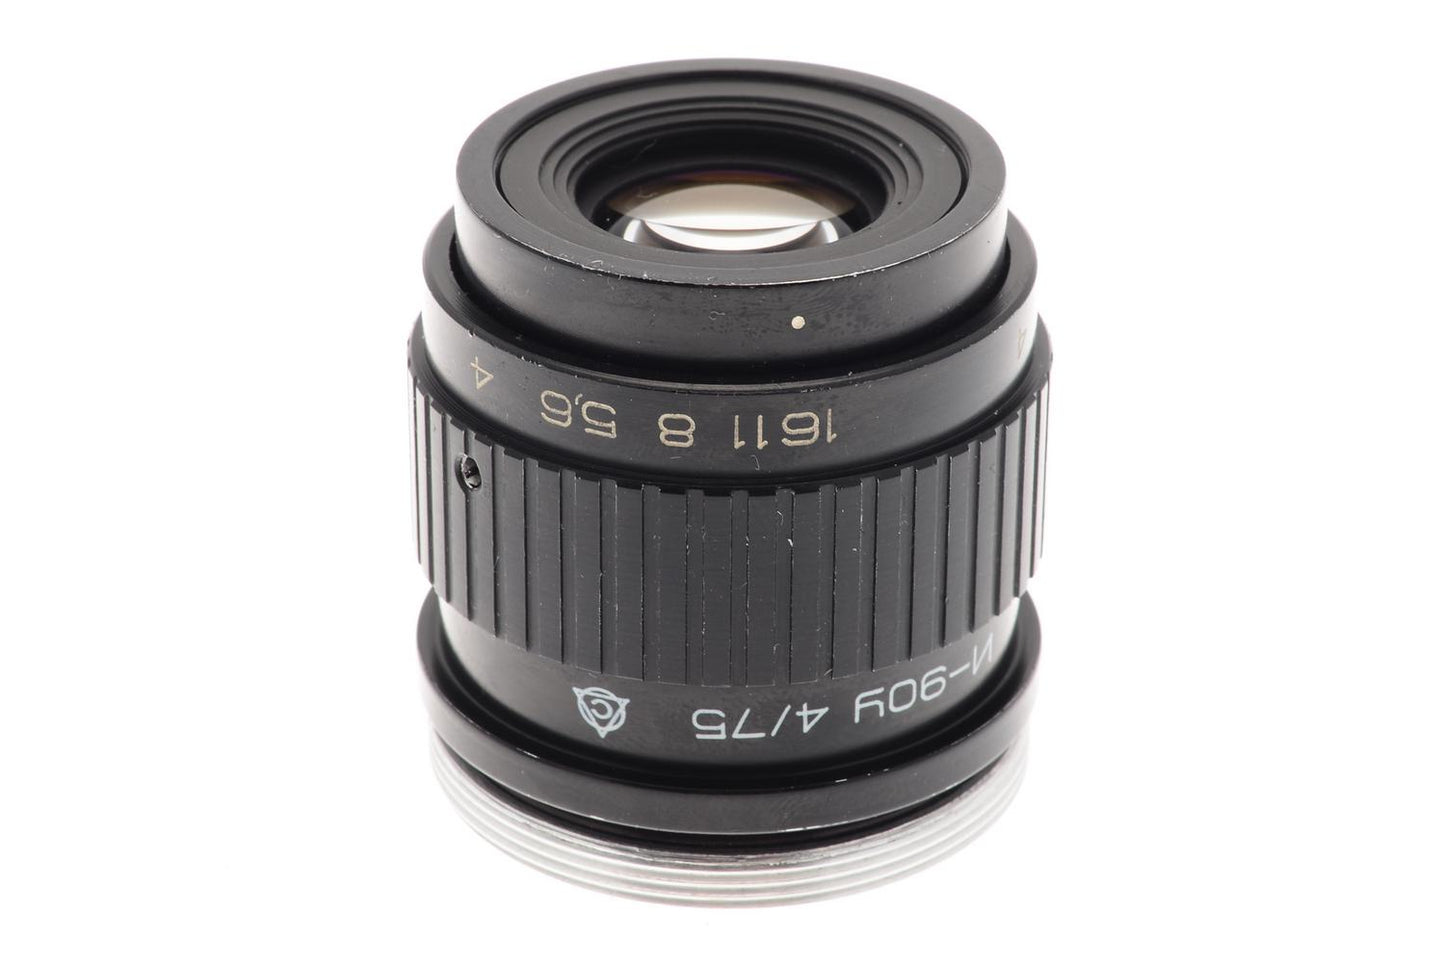 Industar 75mm f4 I-90U - Lens